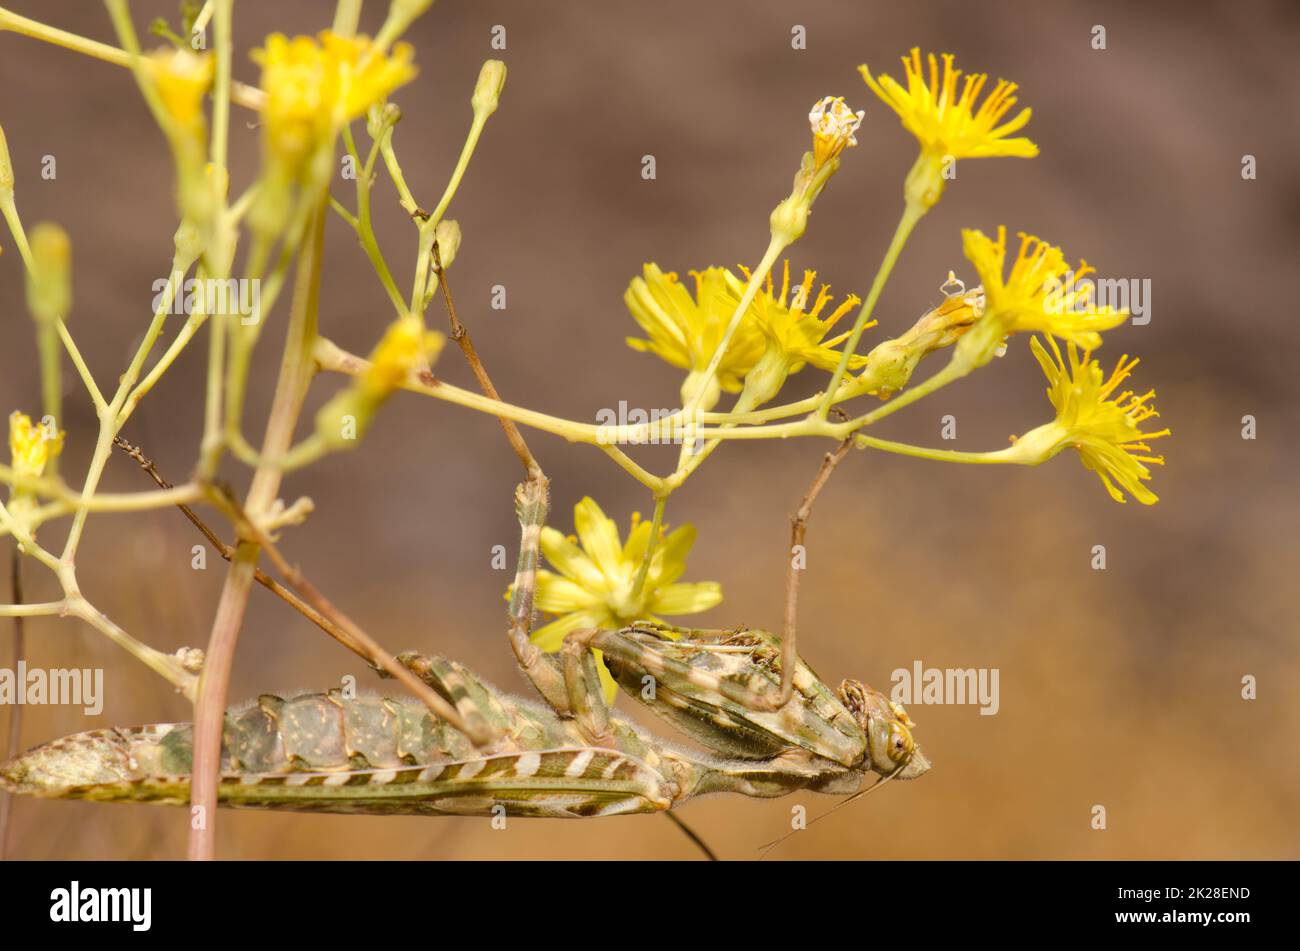 Egyptian flower mantis Blepharopsis mendica. Stock Photo